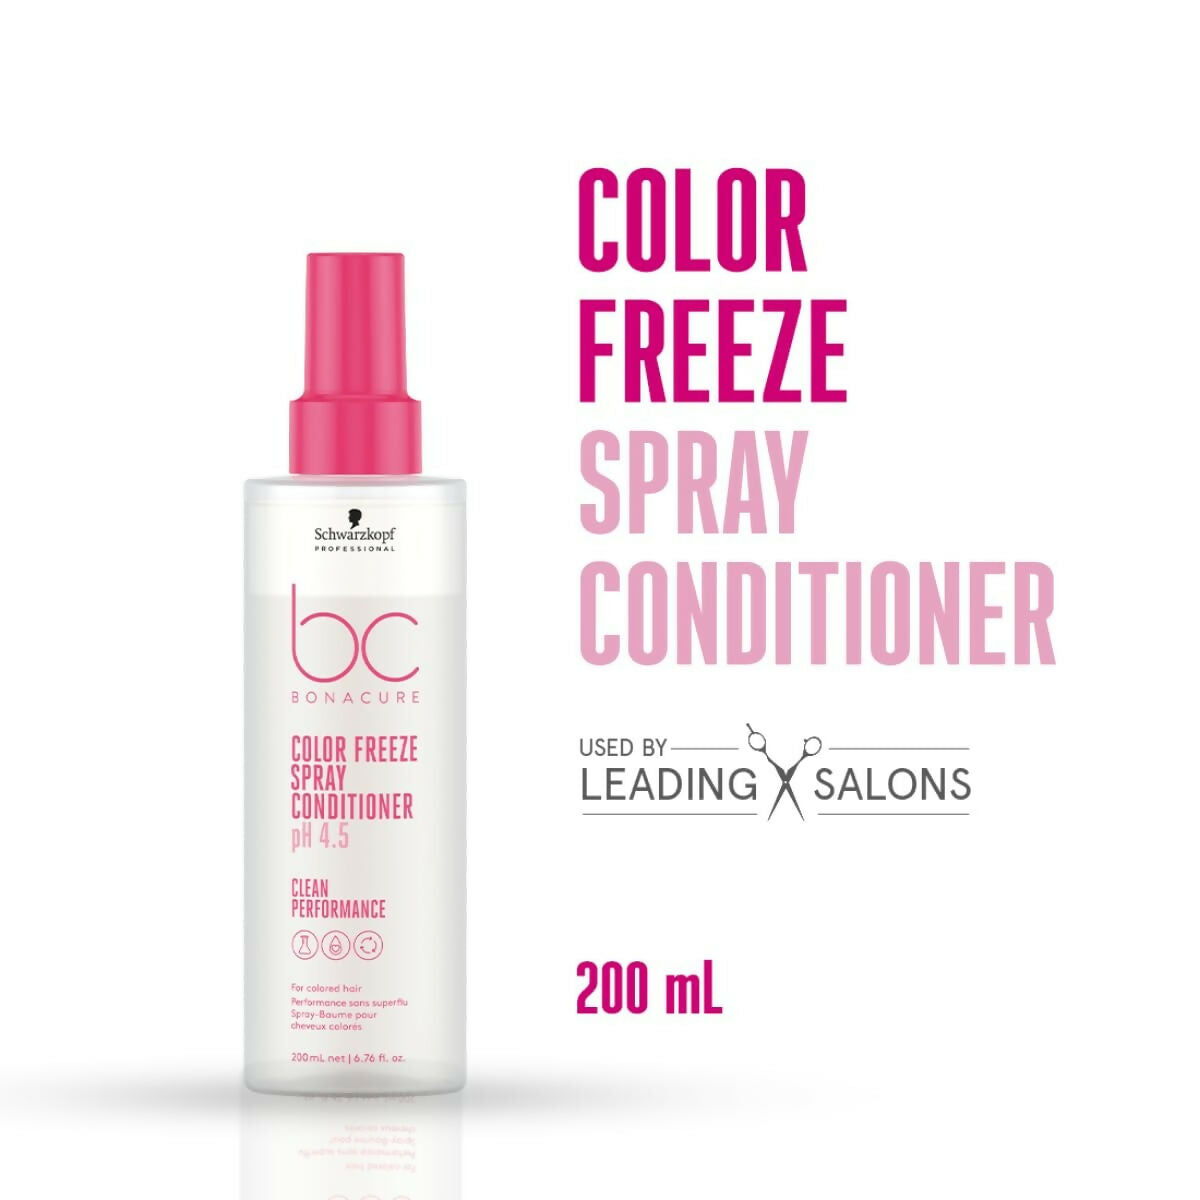 Schwarzkopf Professional Bonacure Color Freeze Spray Conditioner - Distacart